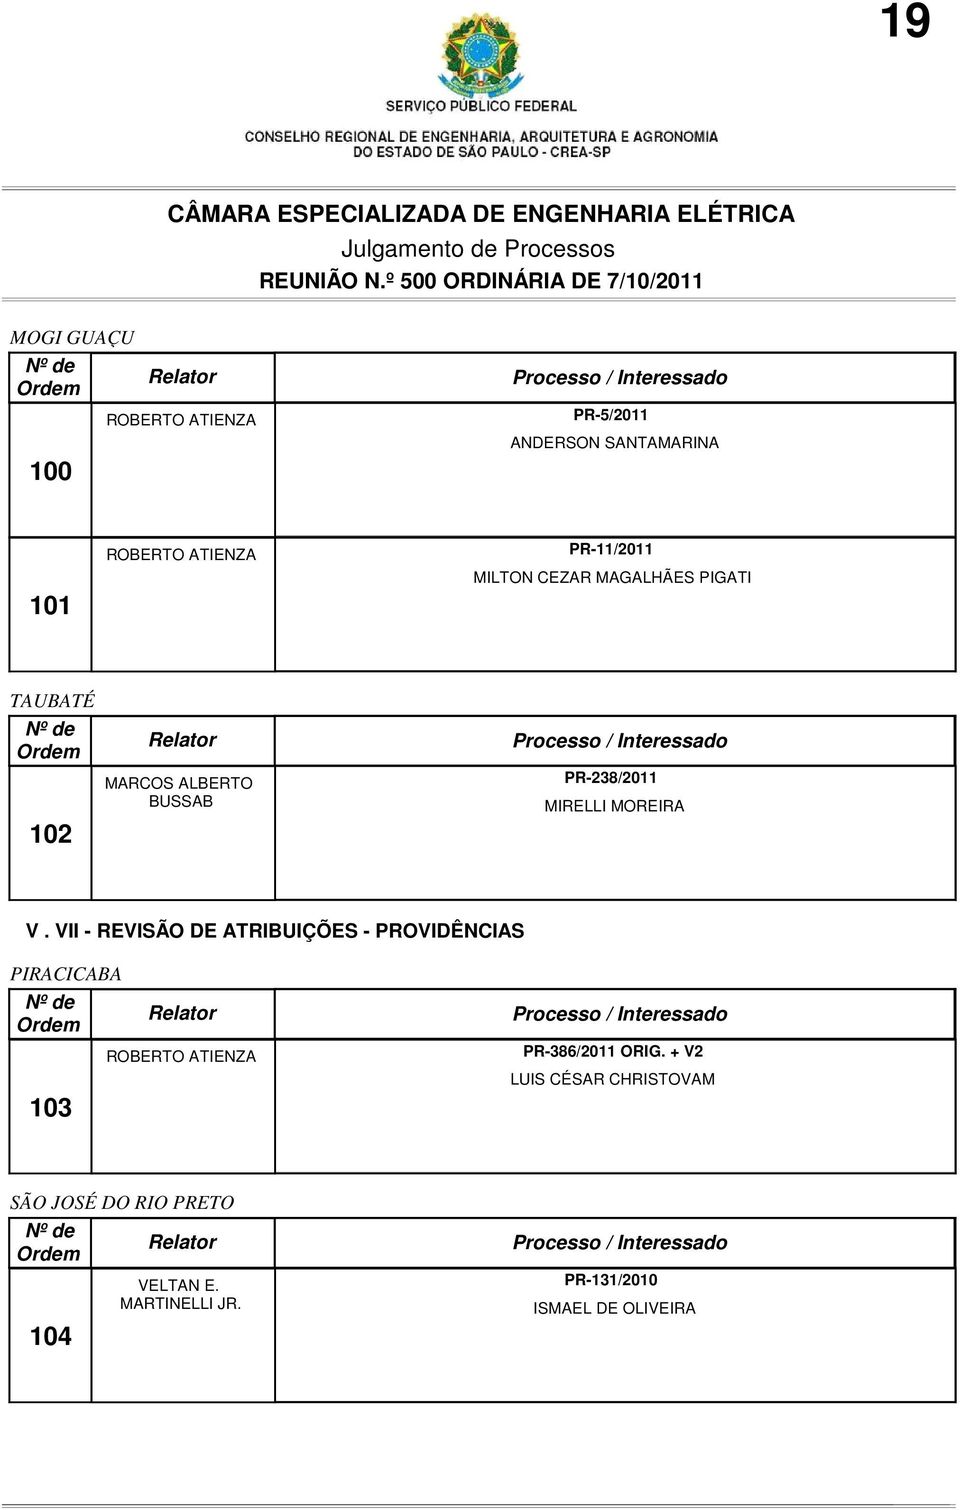 VII - REVISÃO DE ATRIBUIÇÕES - PROVIDÊNCIAS PIRACICABA 103 ROBERTO ATIENZA PR-386/2011 ORIG.